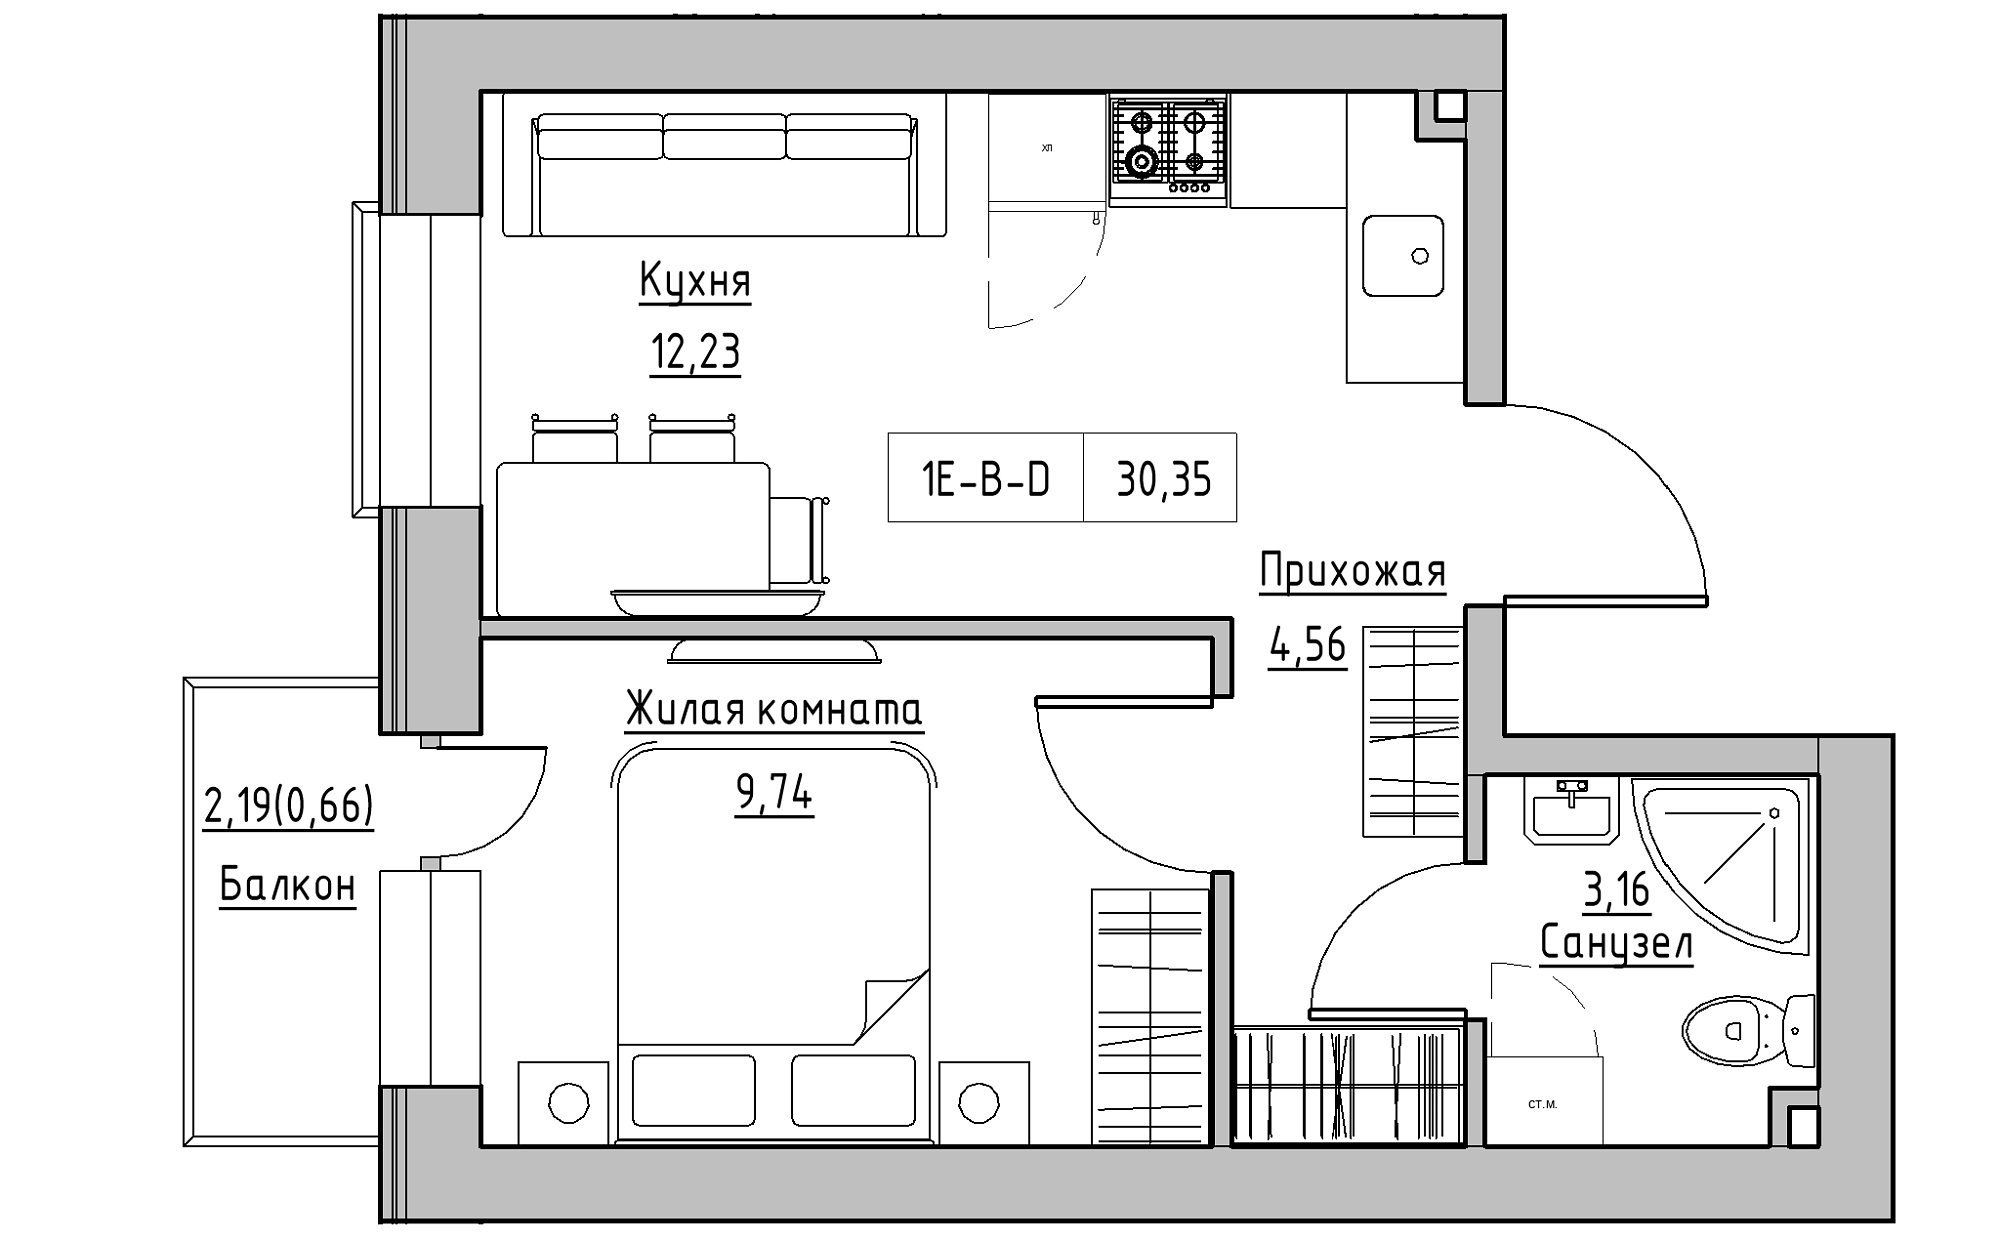 Планировка 1-к квартира площей 30.35м2, KS-022-02/0012.